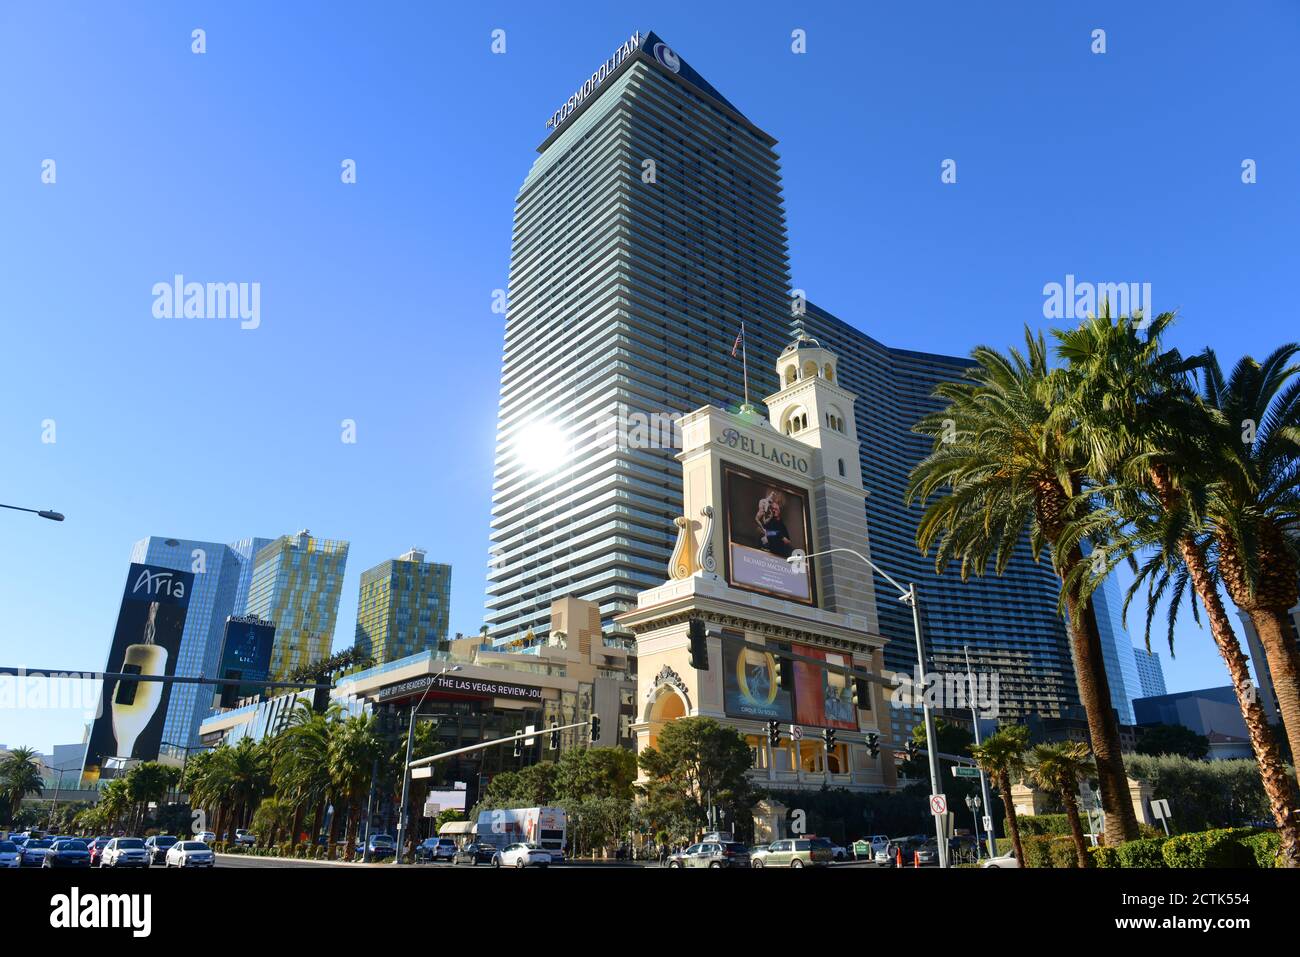 Cosmopolite de Las Vegas (Cosmo) est un complexe et casino de luxe ouvert en 2010 sur le Strip de Las Vegas, dans le Nevada, Etats-Unis. Banque D'Images